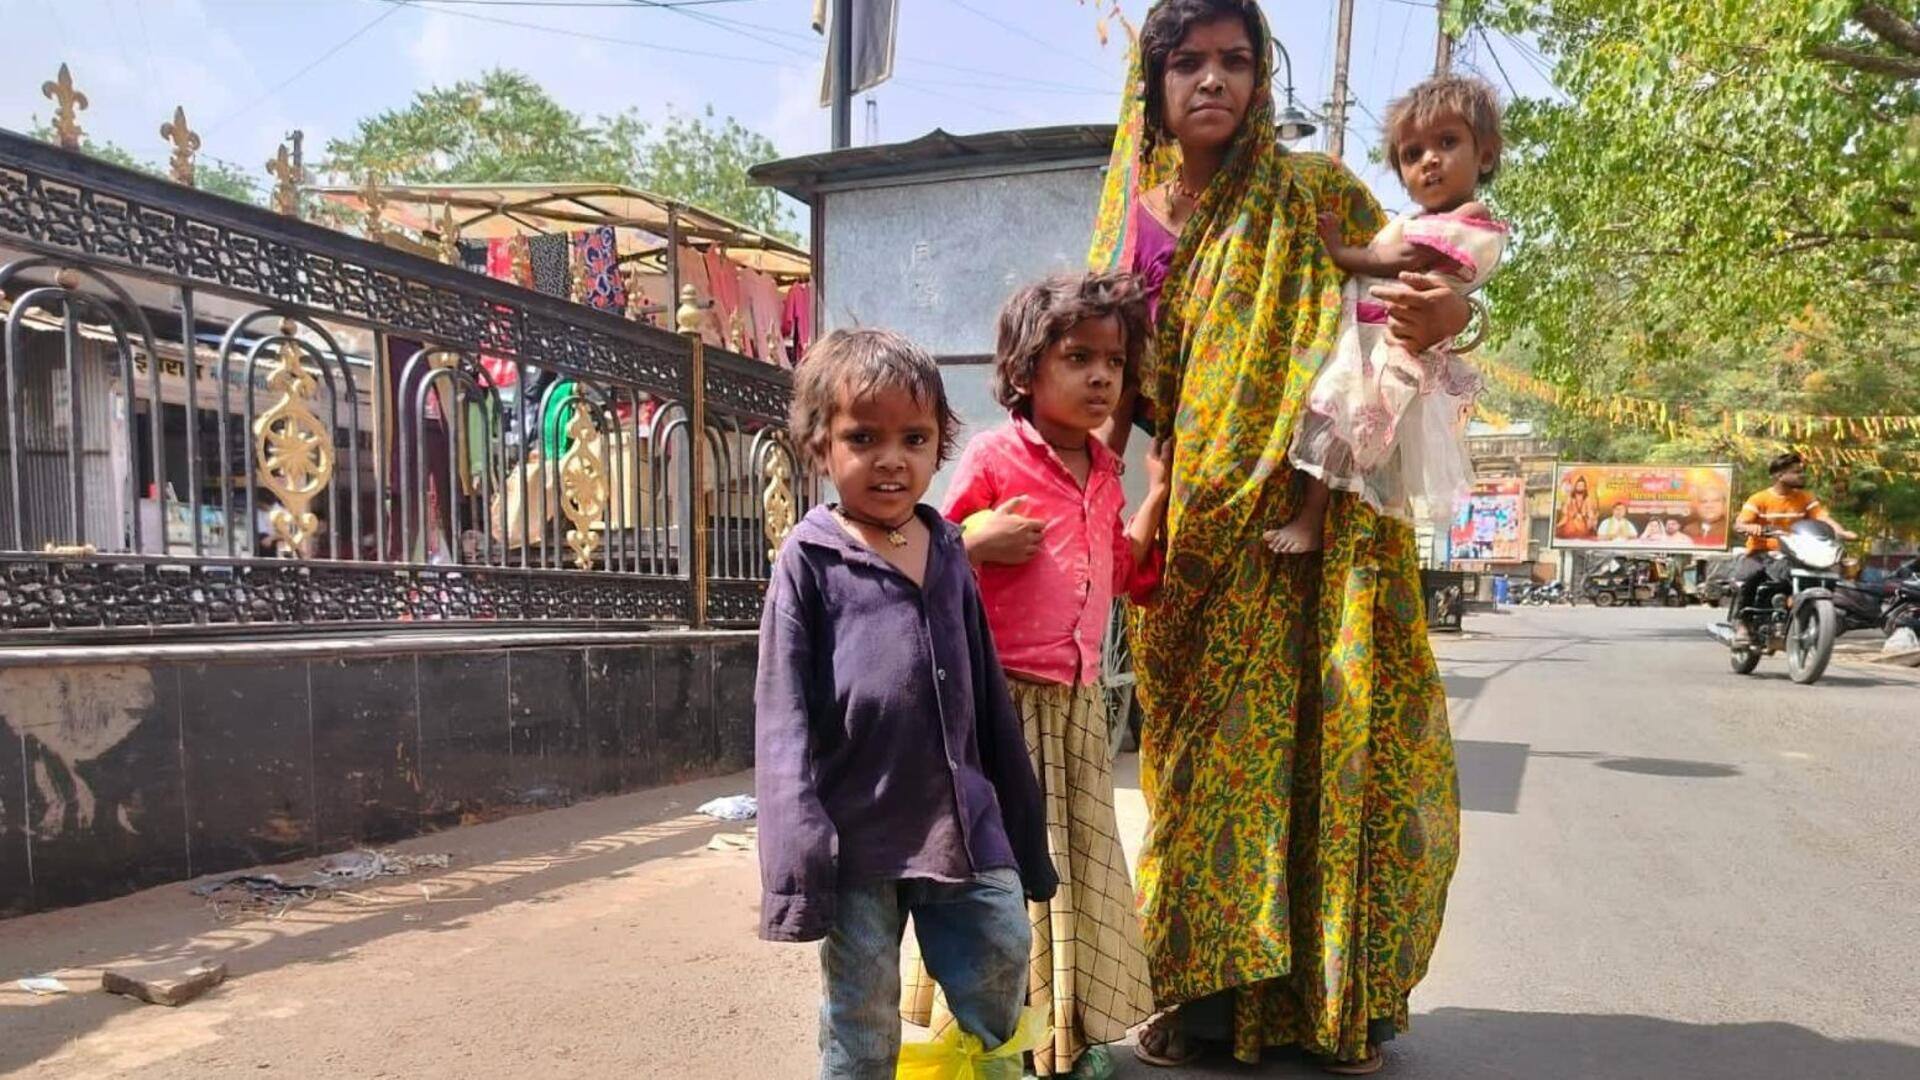 मध्य प्रदेश: आदिवासी बच्चों के पैर में चप्पल की जगह पॉलीथीन, फोटोग्राफर ने की मदद